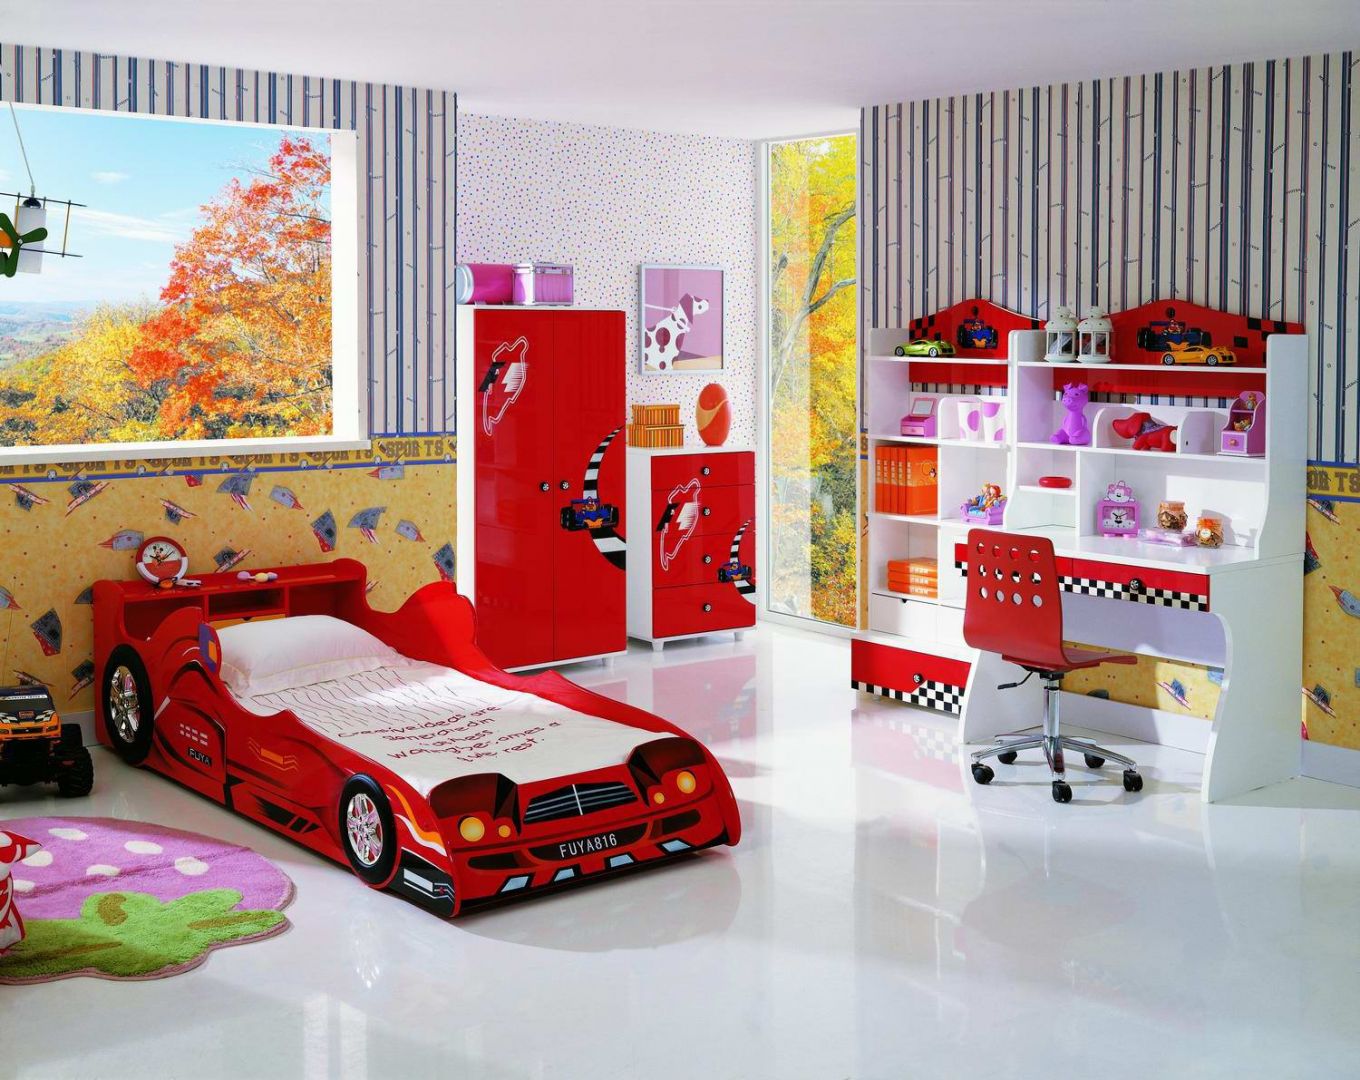 Łóżko dziecięce w kształcie wyścigowego samochodu
Fot. KiddiesCorner